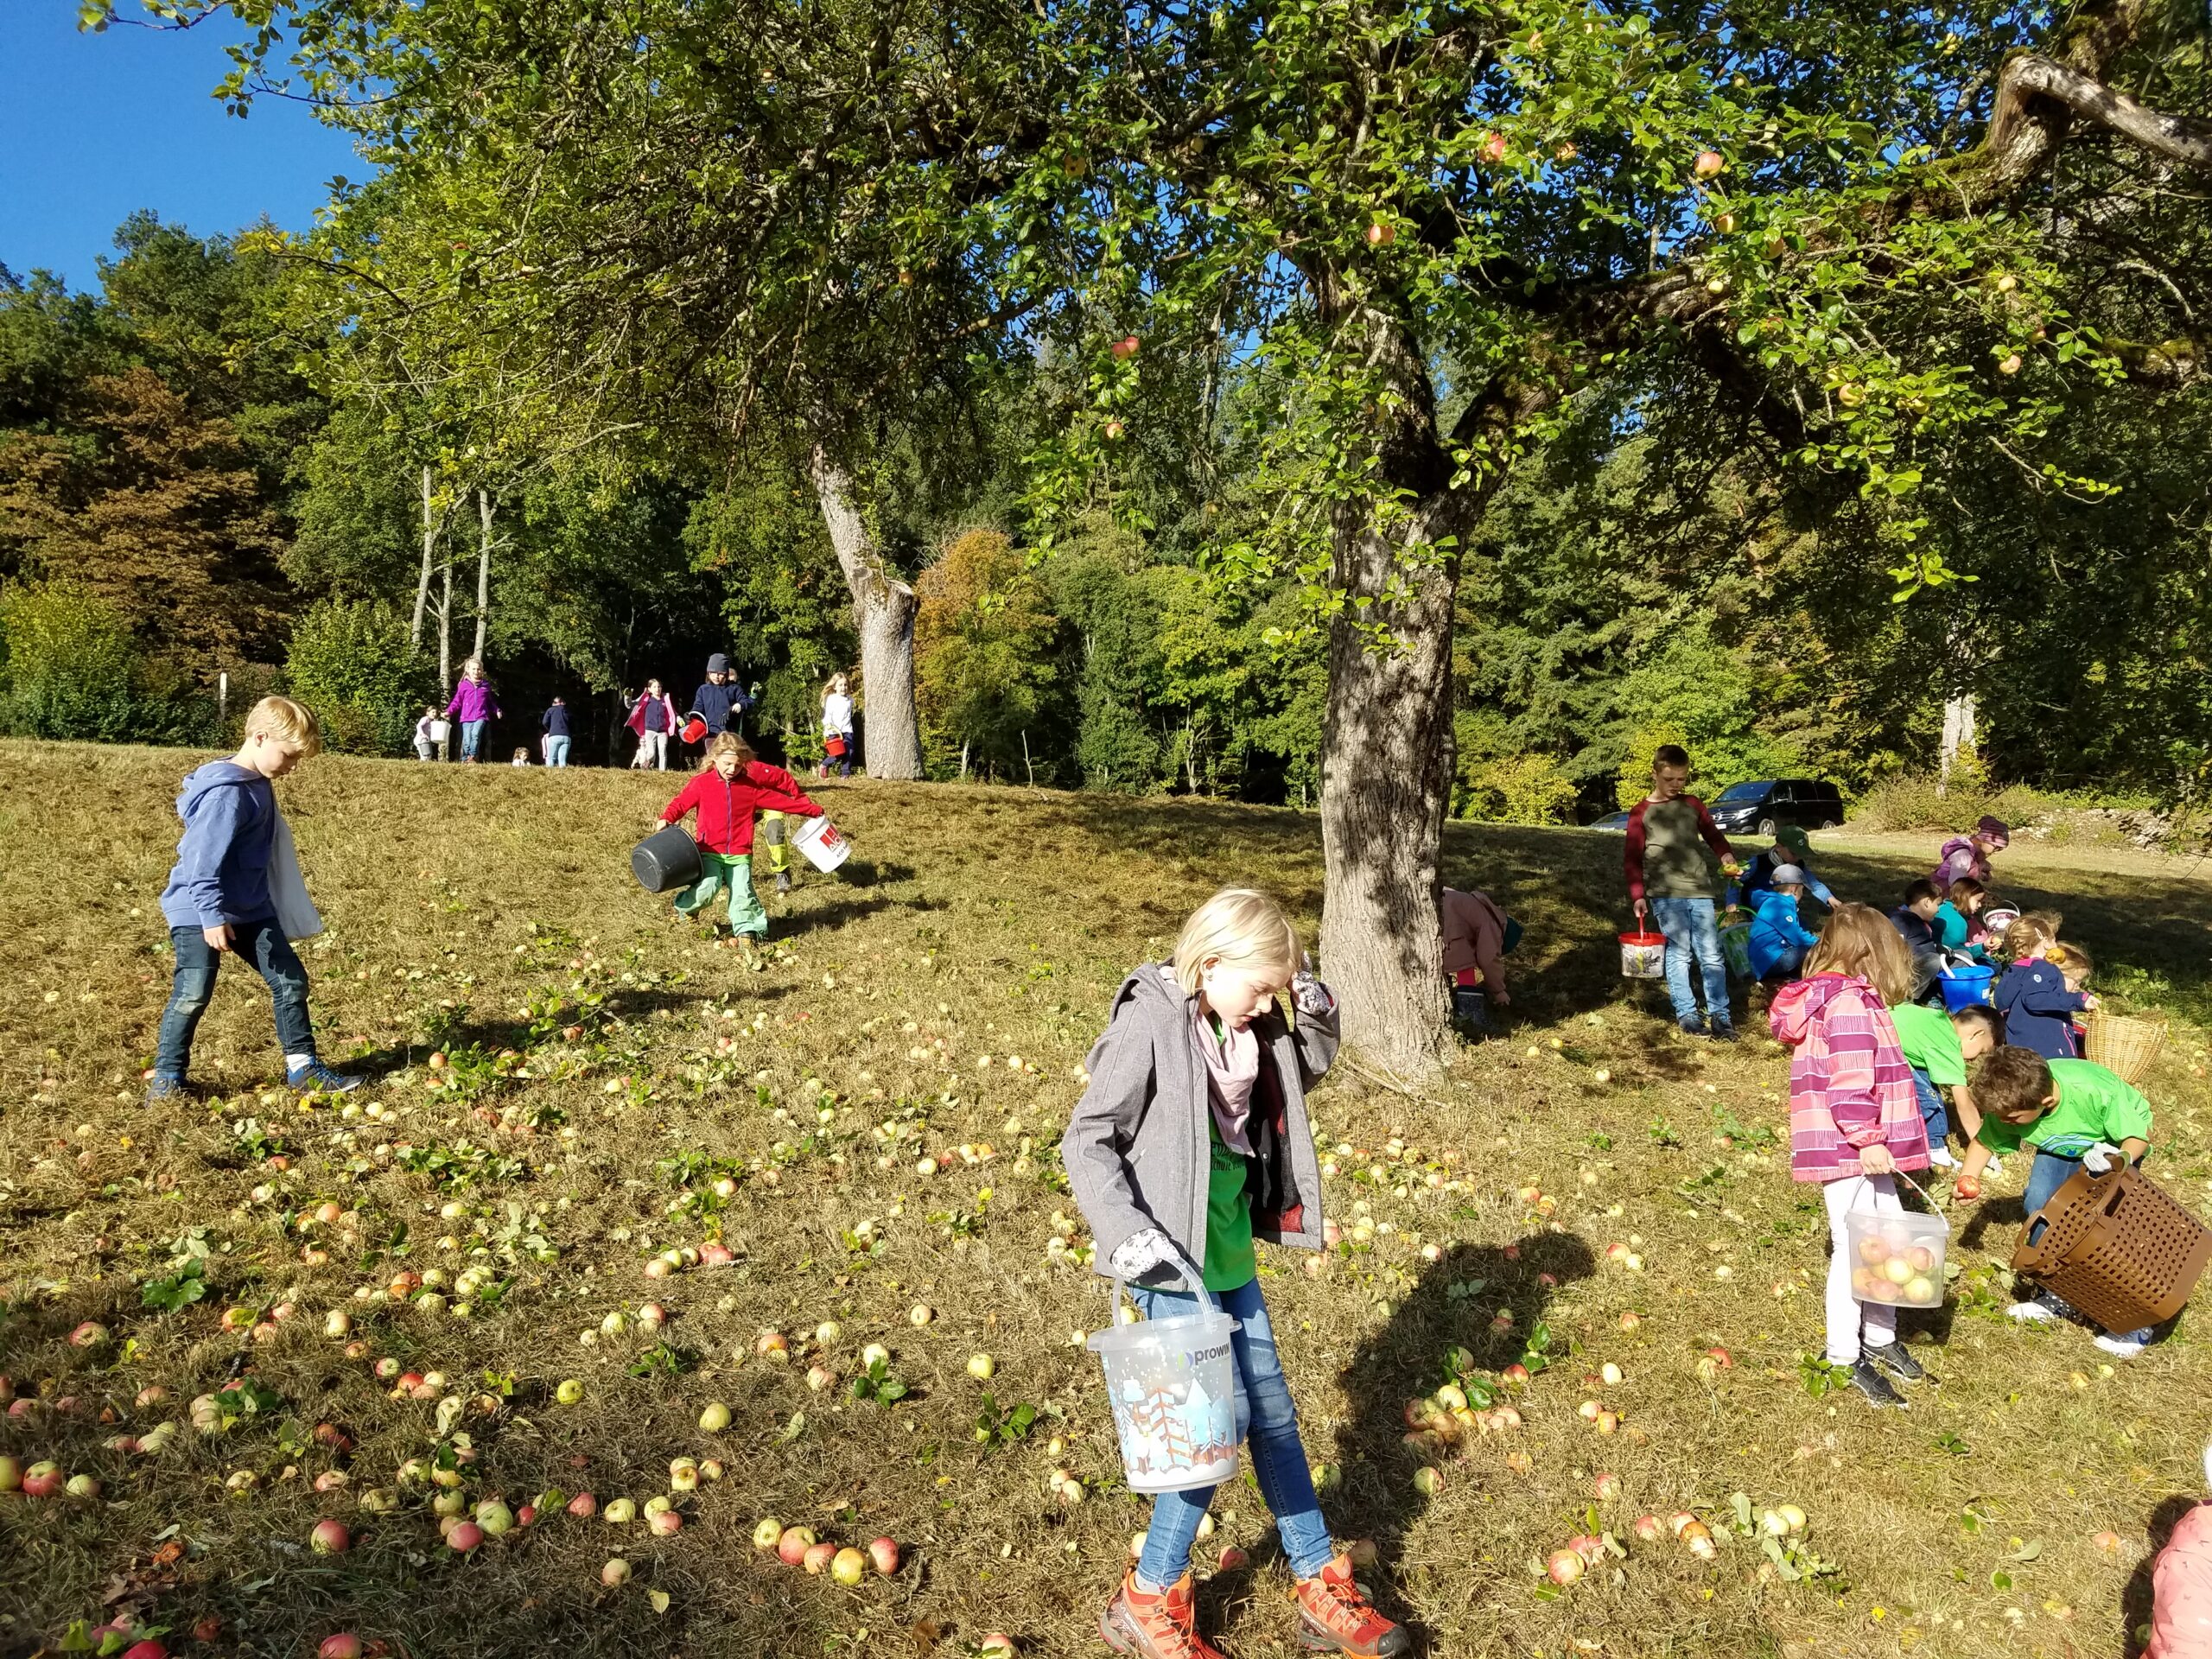 Viele Äpfel liegen auf dem Boden und Kinder sammeln mit Eimern.